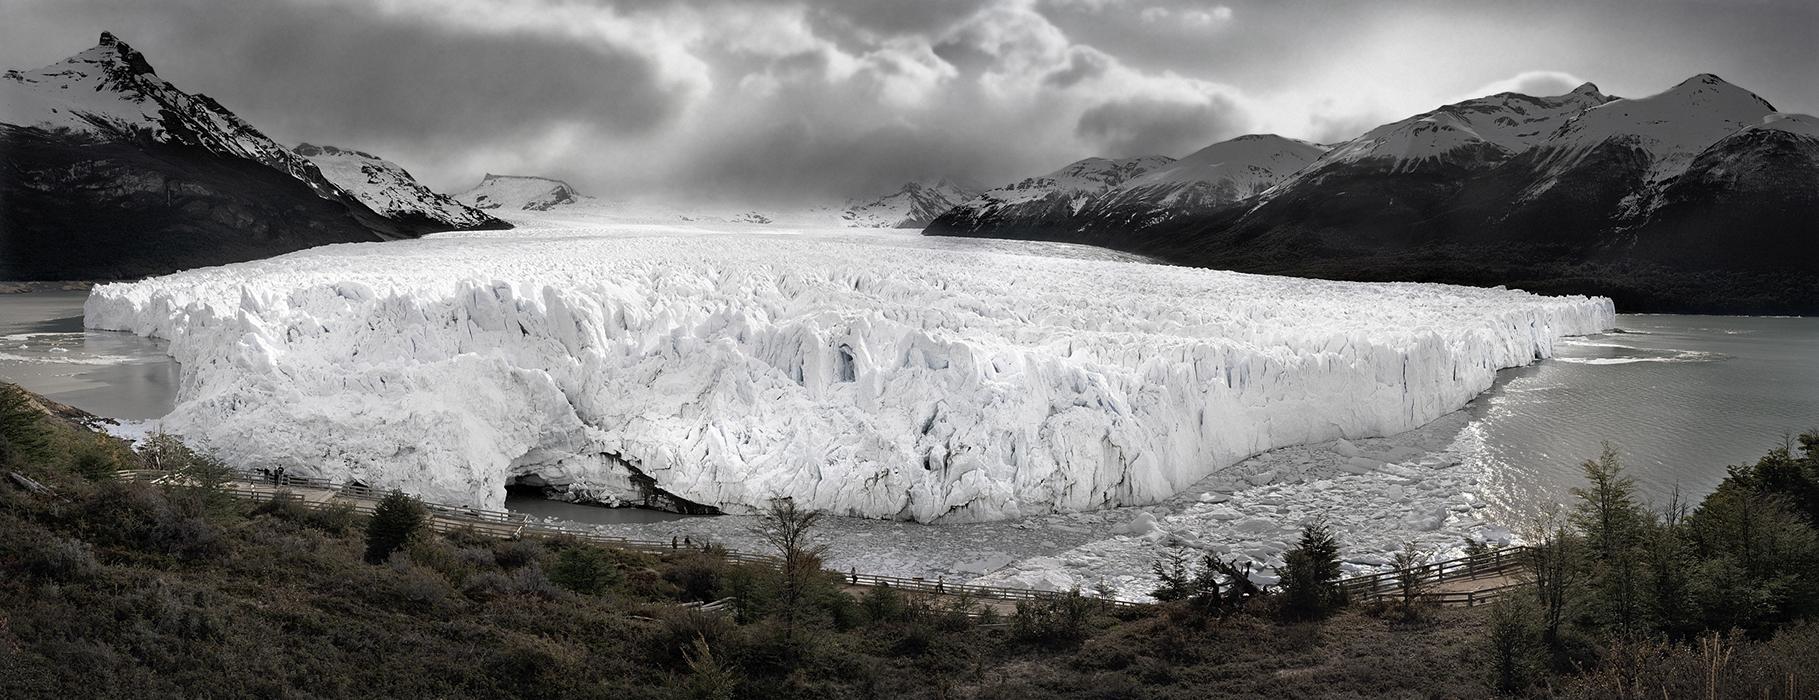 peritomoreno-glacier-argentina